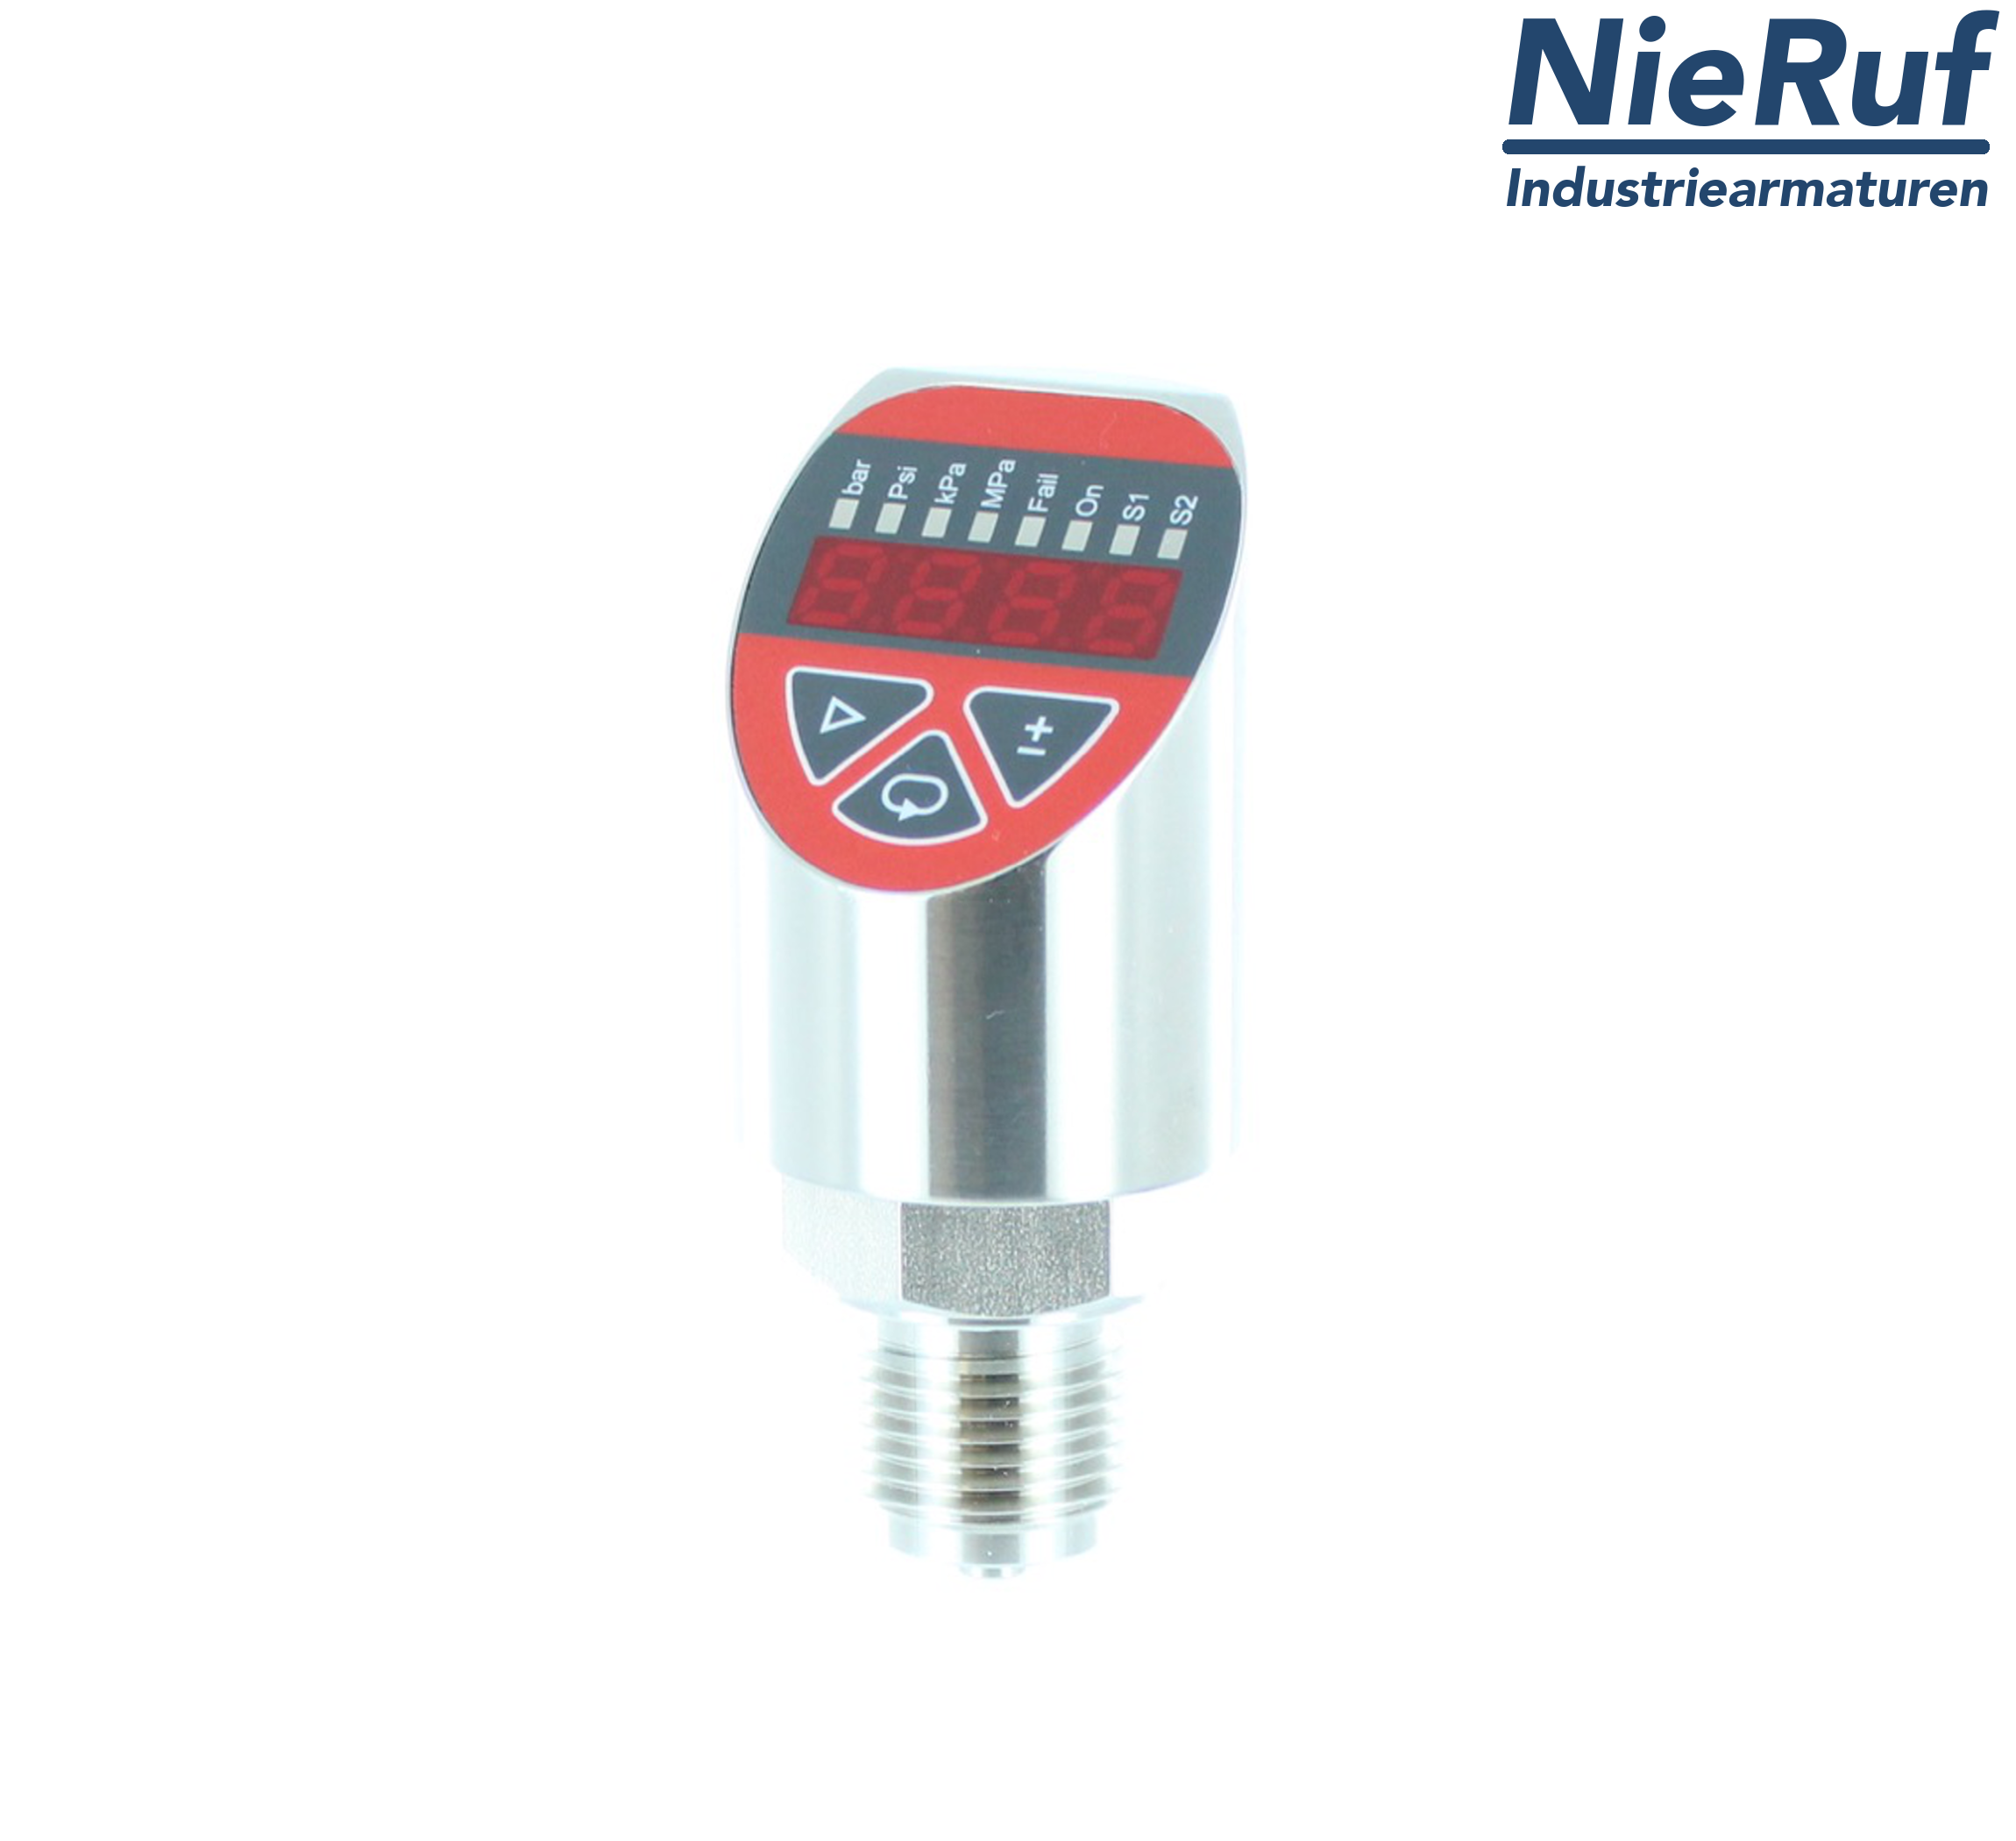 digital pressure sensor G 1/4" B 4-wire: 1xPNP, 1x4 - 20mA FPM 0,0 - 6,0 bar